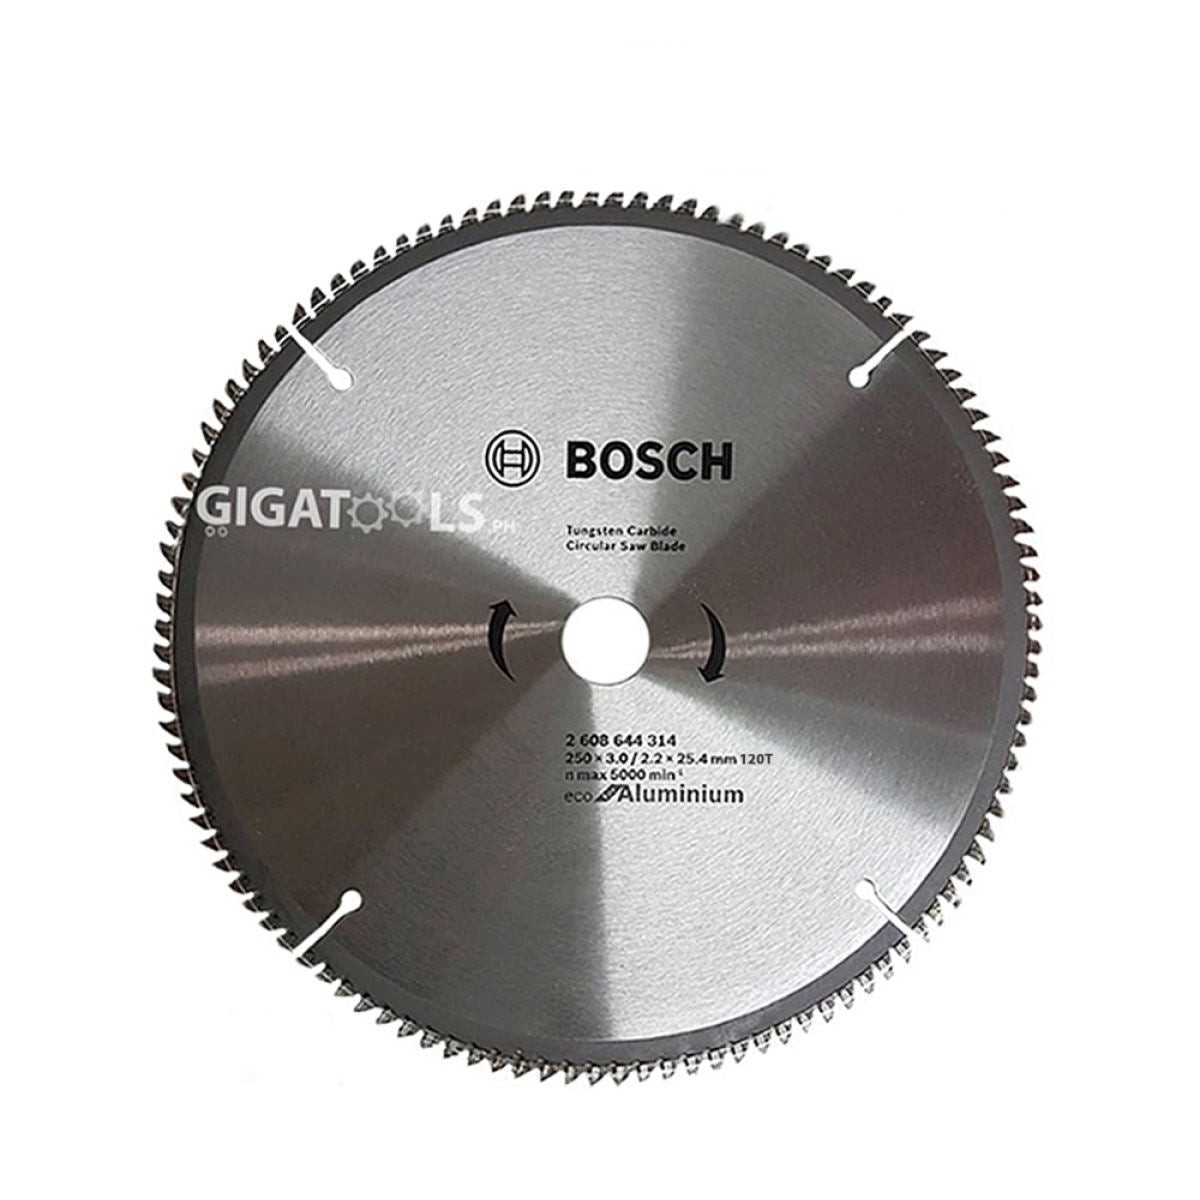 Bosch 10